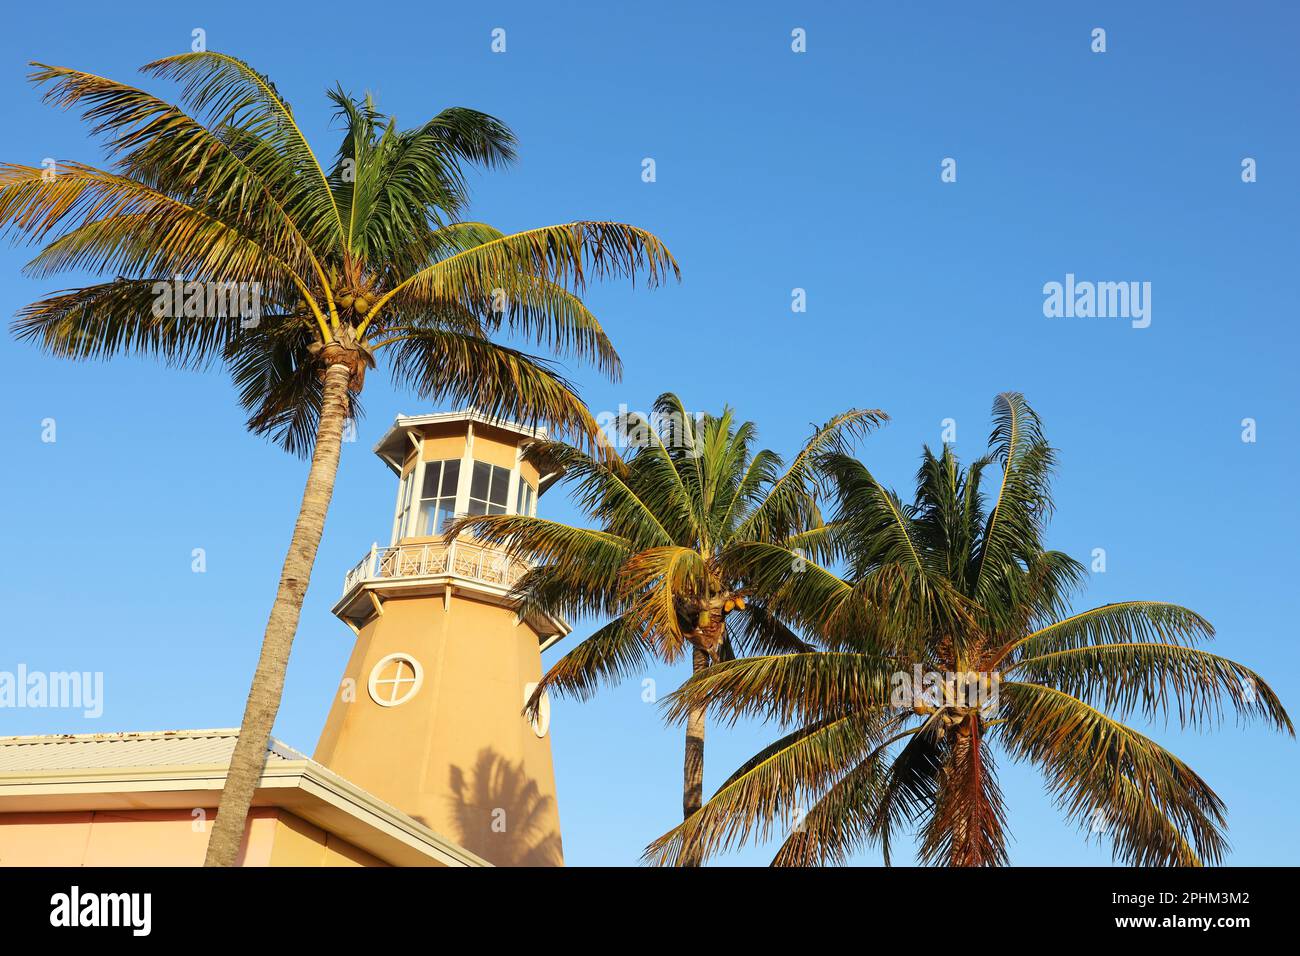 Vue sur le phare et les palmiers à noix de coco sur fond bleu ciel Banque D'Images